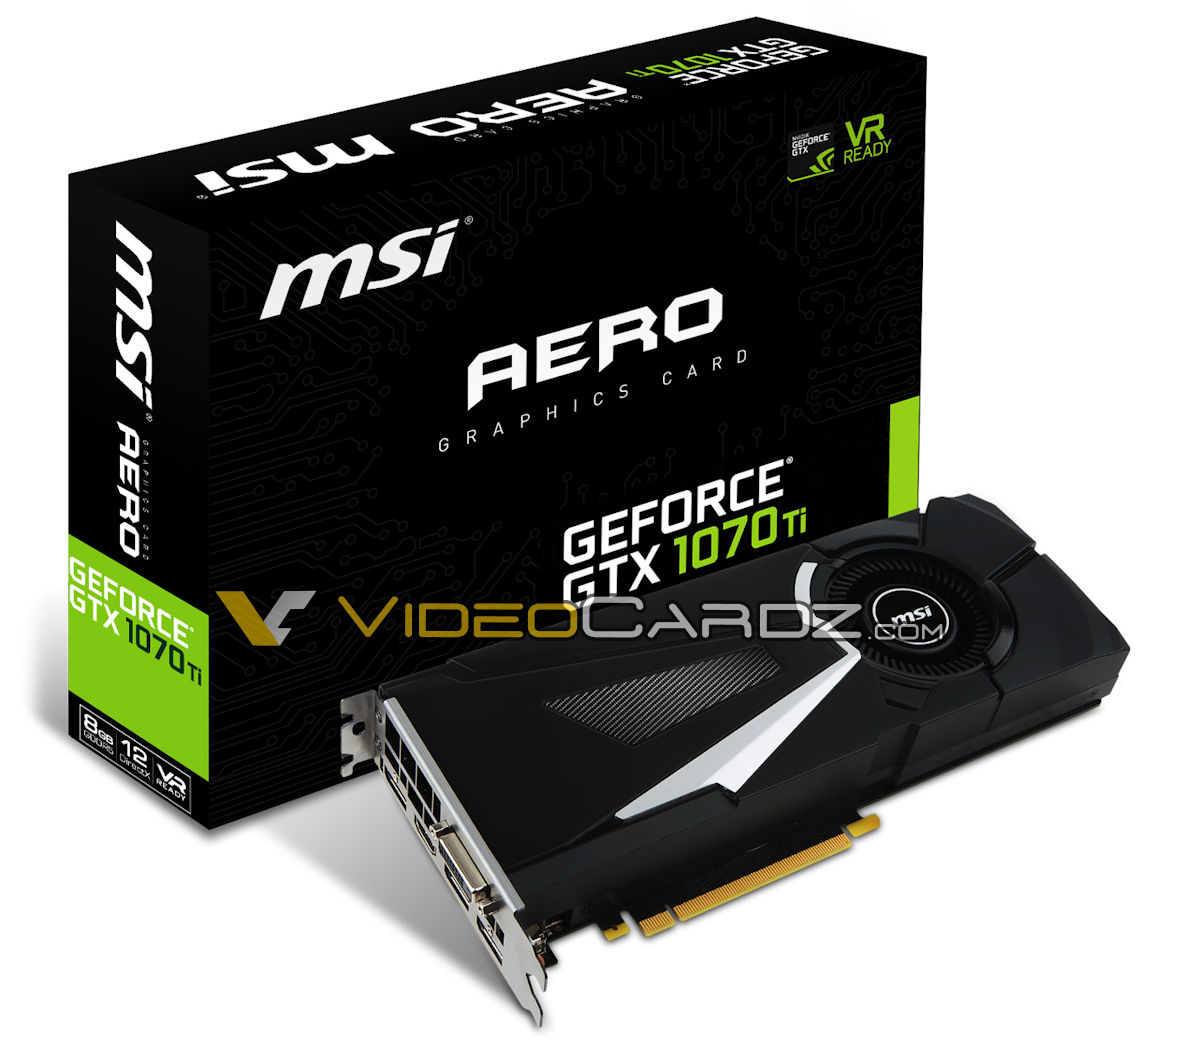 voordelig Aanval Uitschakelen MSI GeForce GTX 1070 Ti GAMING, AERO and ARMOR leaked - VideoCardz.com